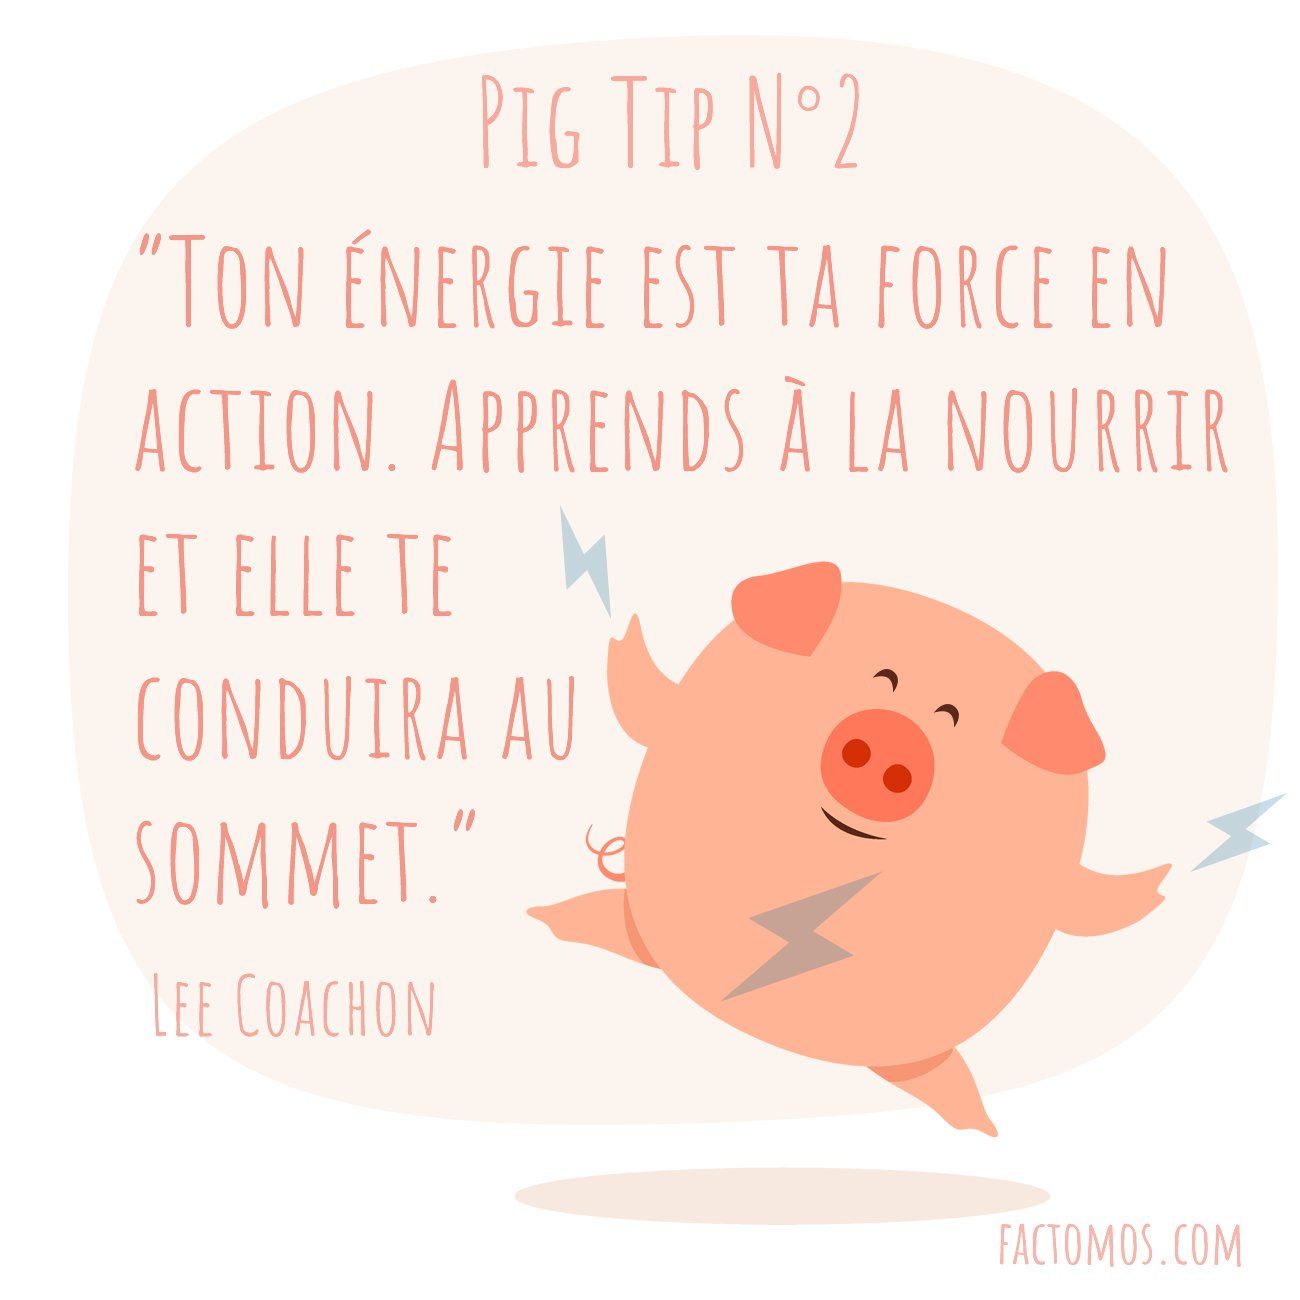 Pig Tip #2